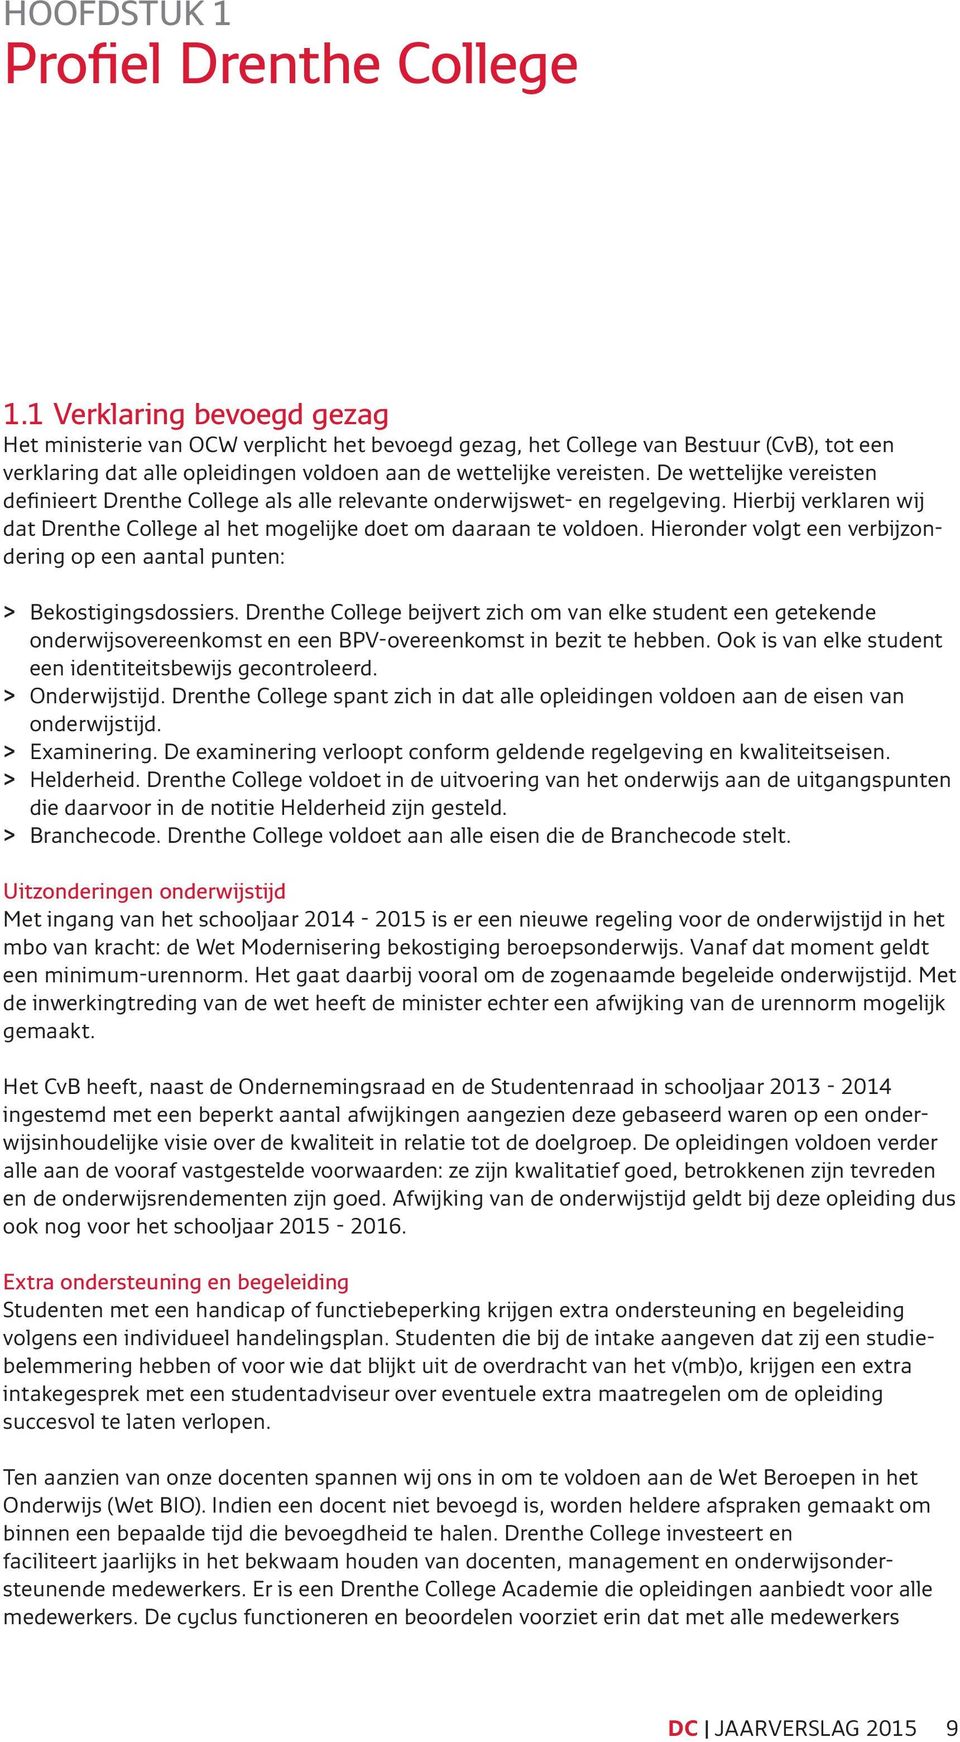 De wettelijke vereisten definieert Drenthe College als alle relevante onderwijswet- en regelgeving. Hierbij verklaren wij dat Drenthe College al het mogelijke doet om daaraan te voldoen.